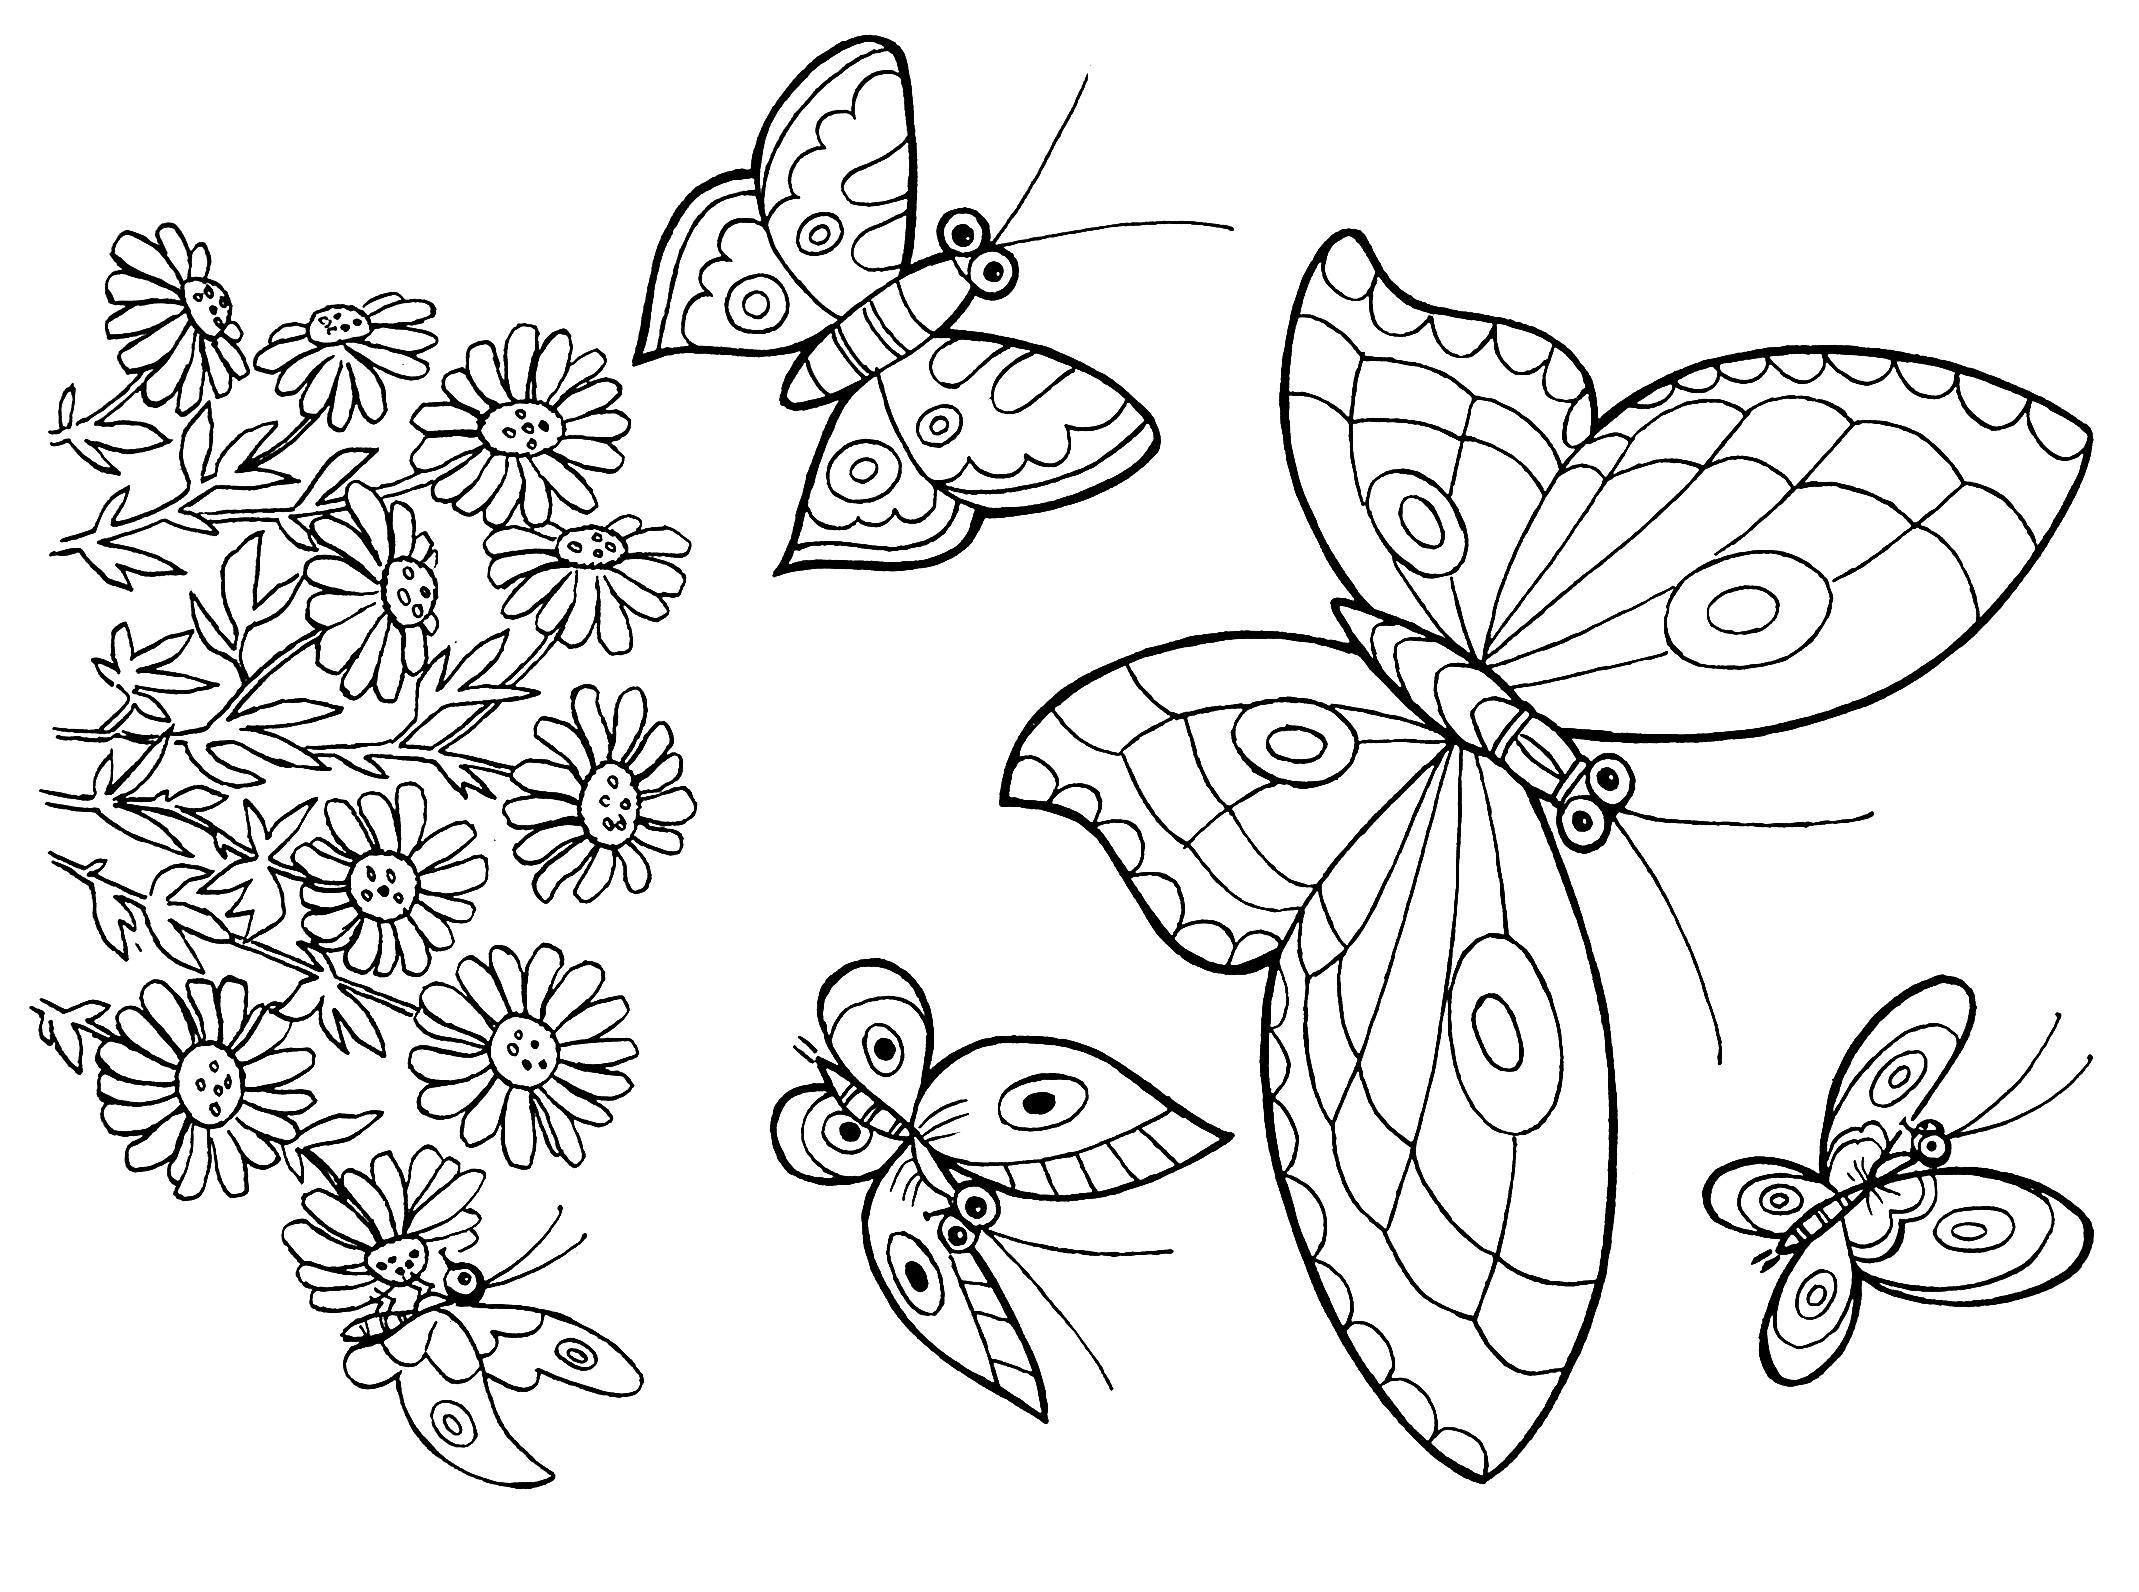  раскраски с бабочками для взрослых      раскраски на тему бабочки для детей и взрослых. Раскраски с красивыми бабочками для взрослых. Раскраски с бабочками                         